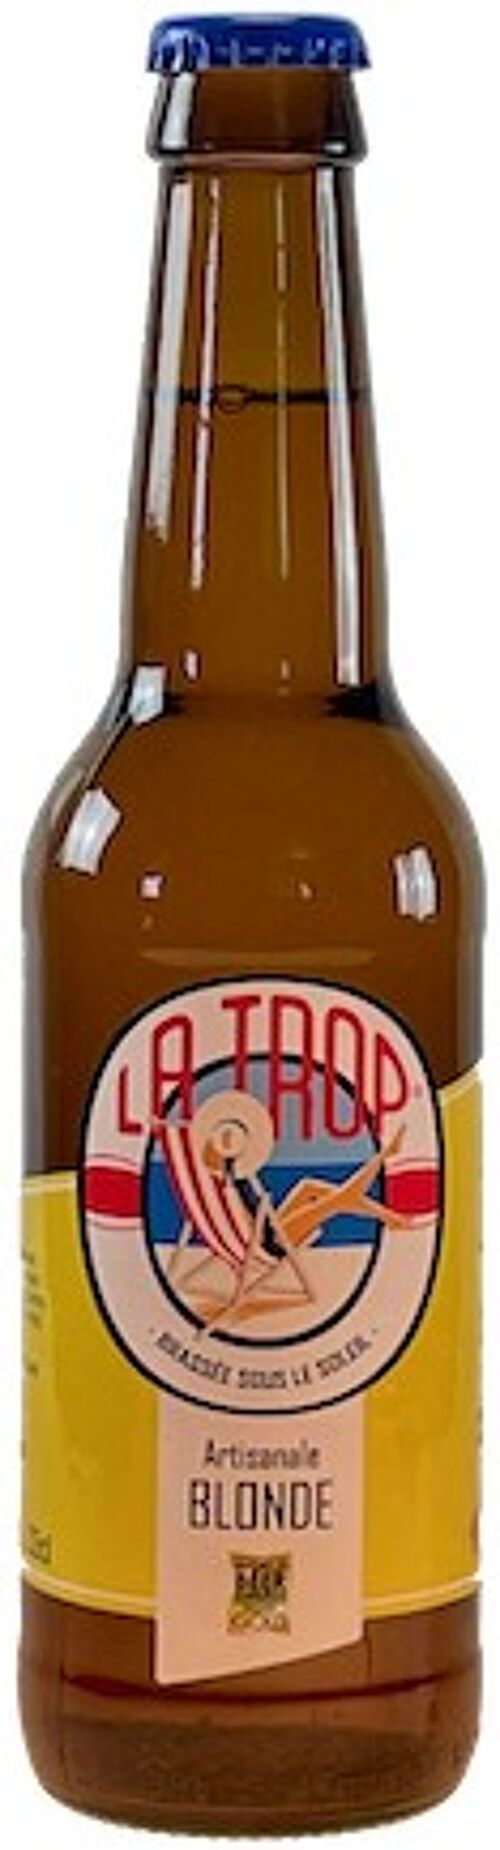 Bière LA TROP' blonde 5,5% 33cl